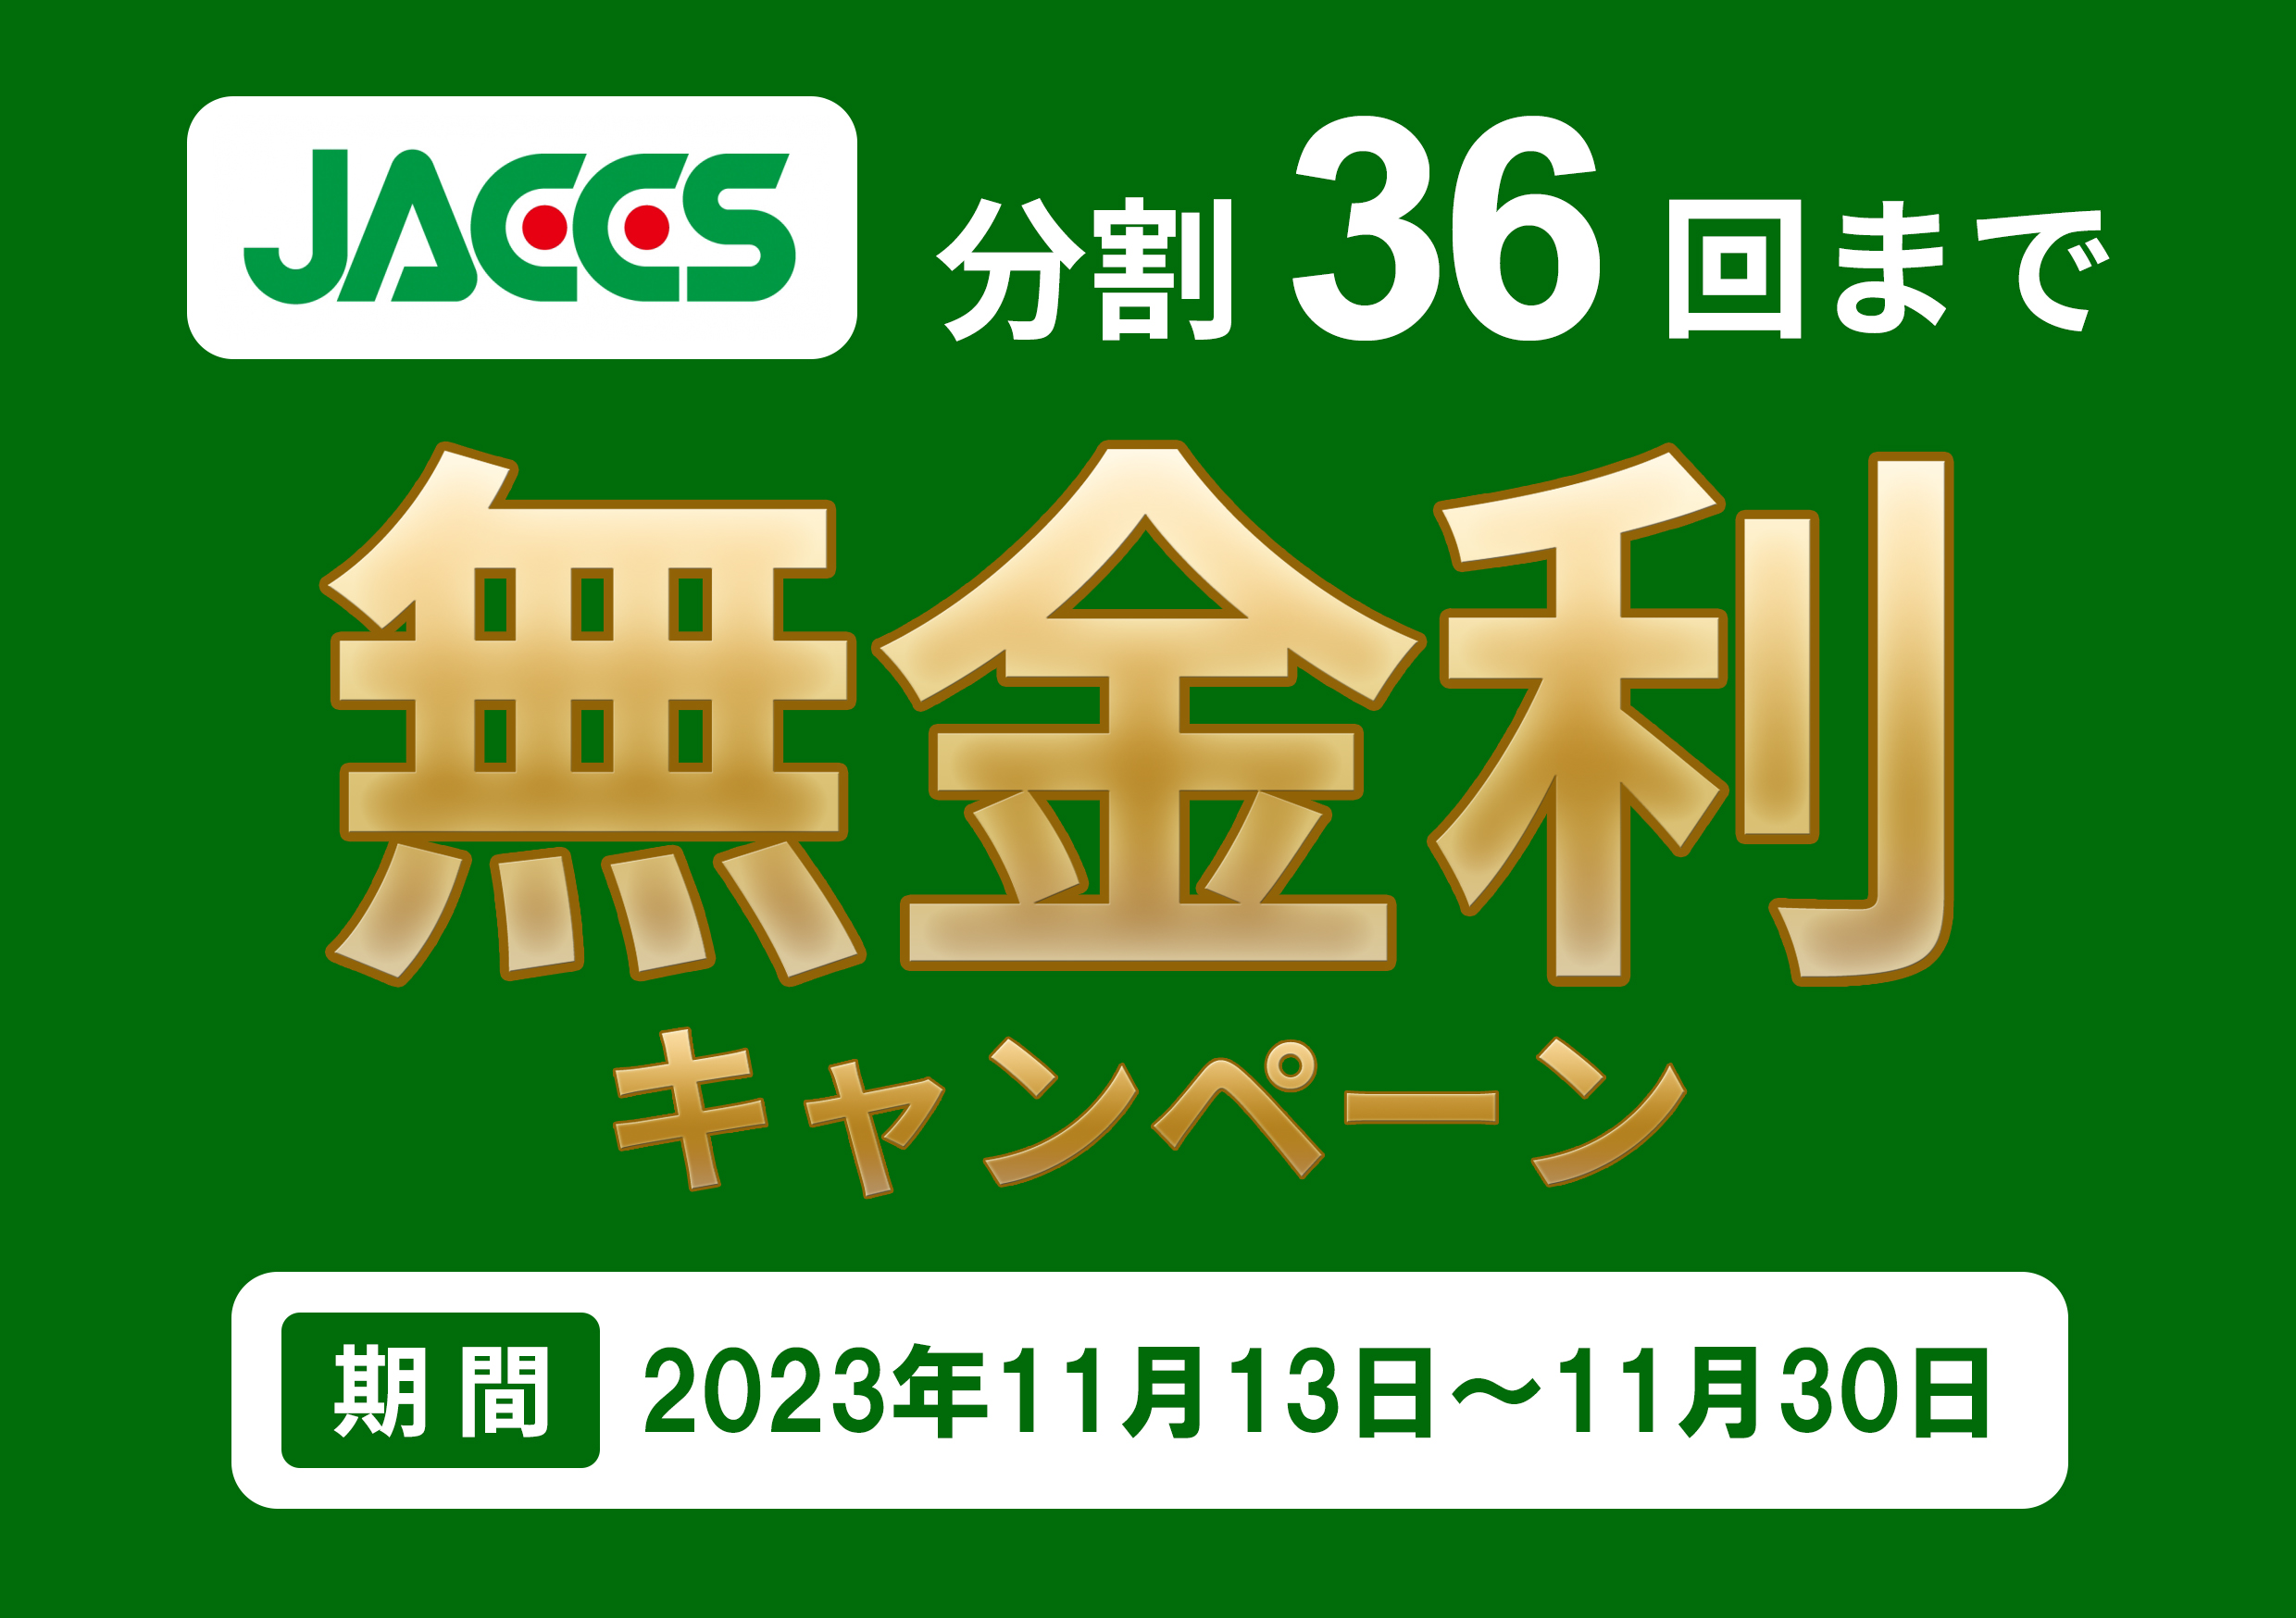 JACCSショッピングクレジット無金利キャンペーンのお知らせ